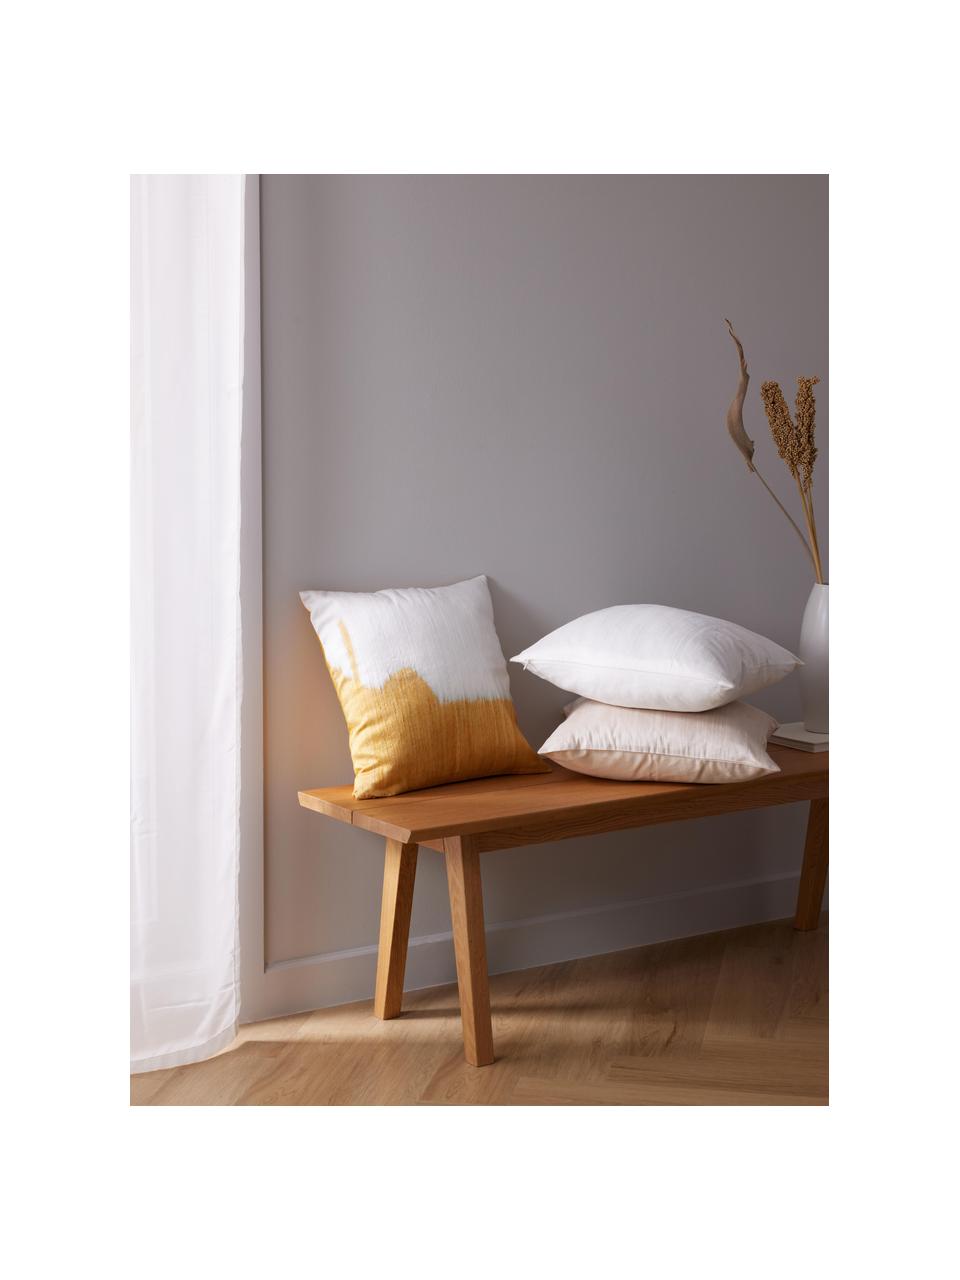 Poszewka na poduszkę z jedwabiu Aryane, Żółty, biały, S 45 x D 45 cm